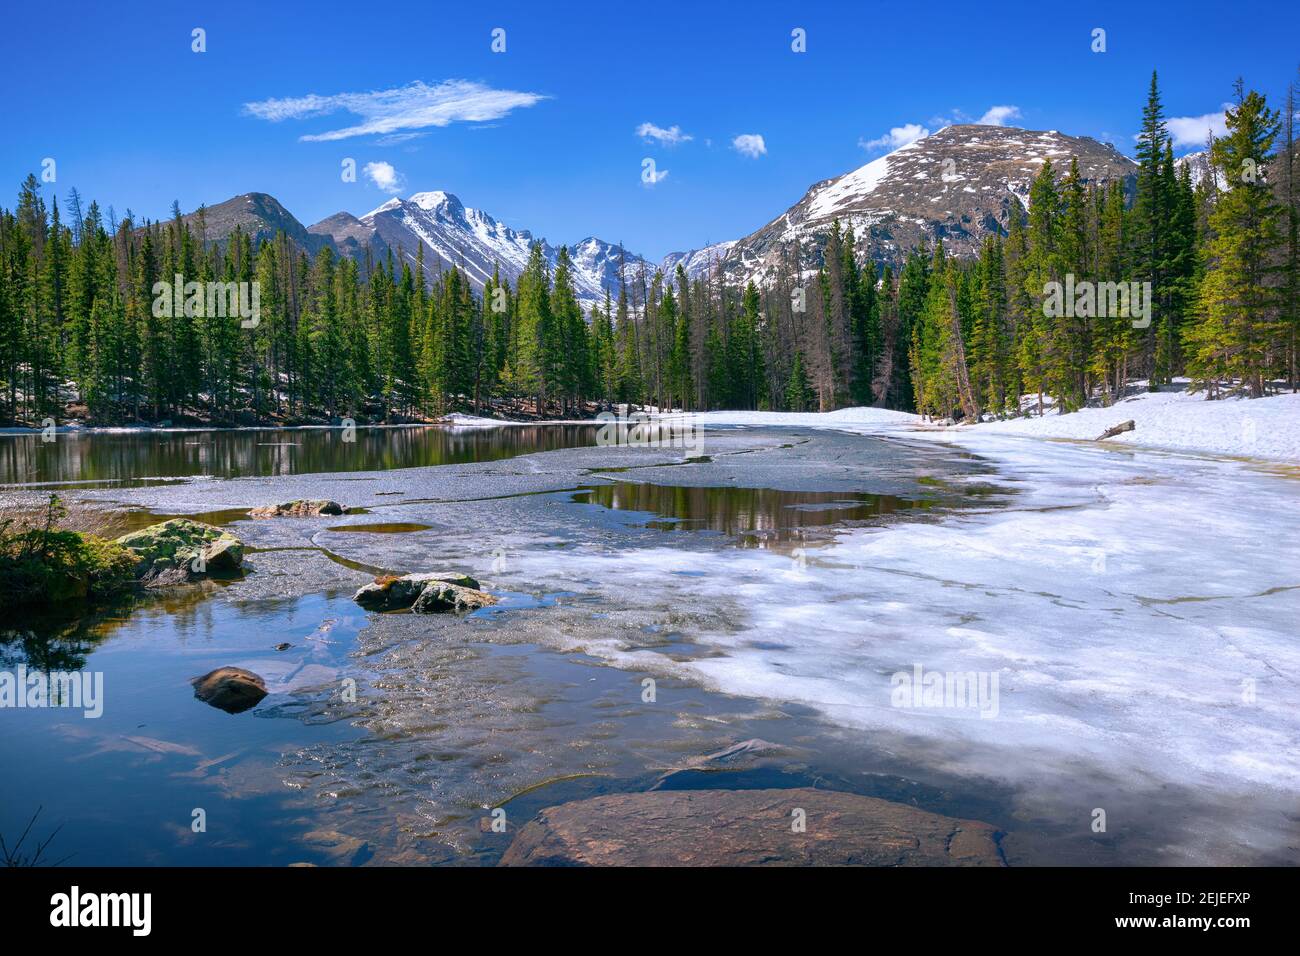 Le lac nymphe au parc national des montagnes Rocheuses Banque D'Images